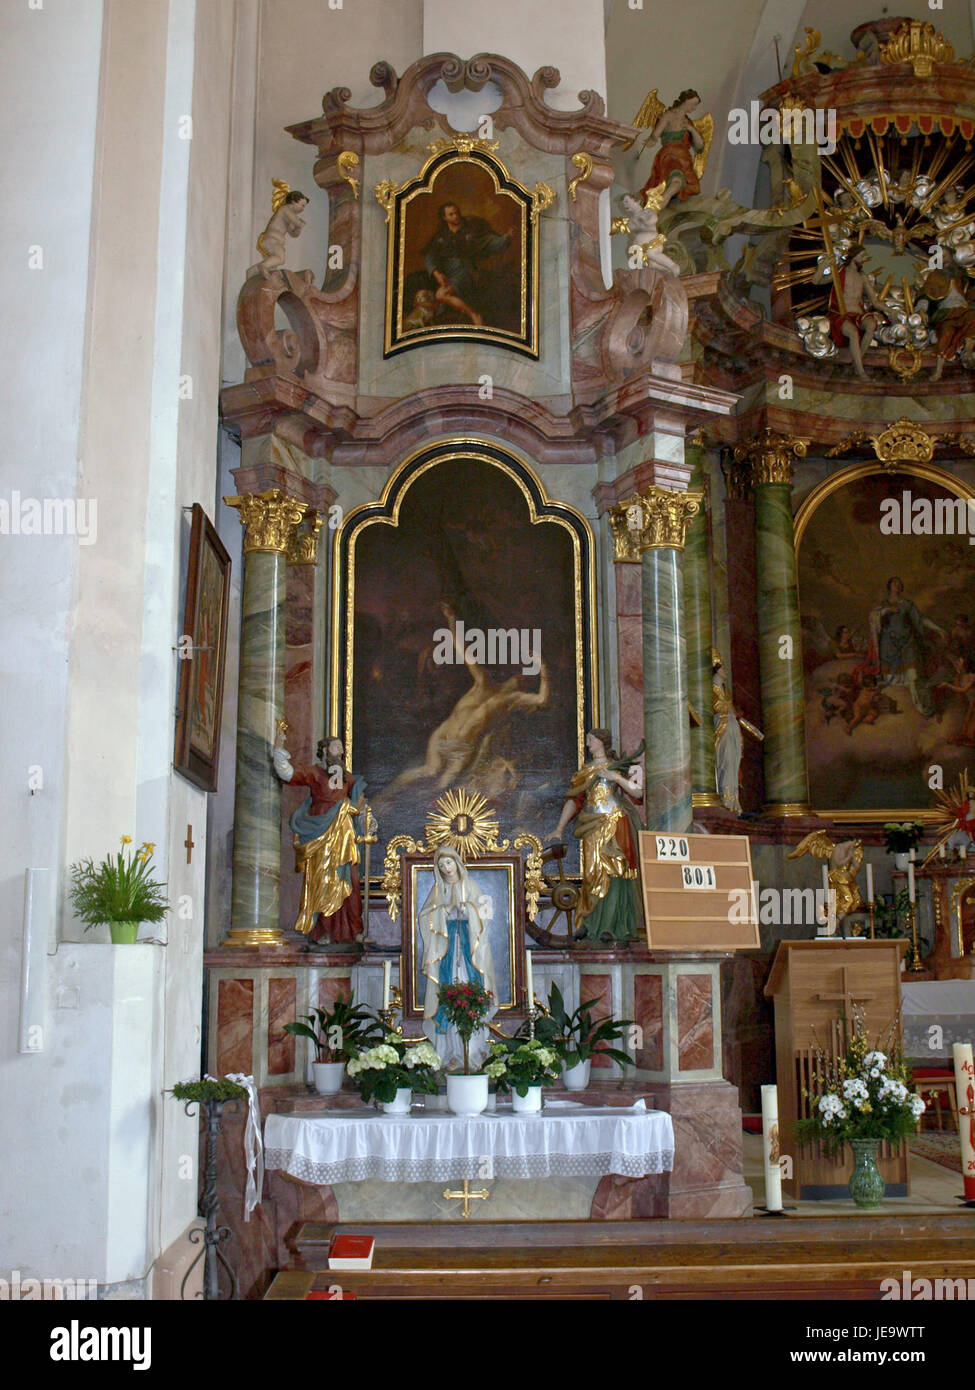 2013.04.21 - Opponitz - Pfarrkirche hl. Kunigunde - 12 Stock Photo